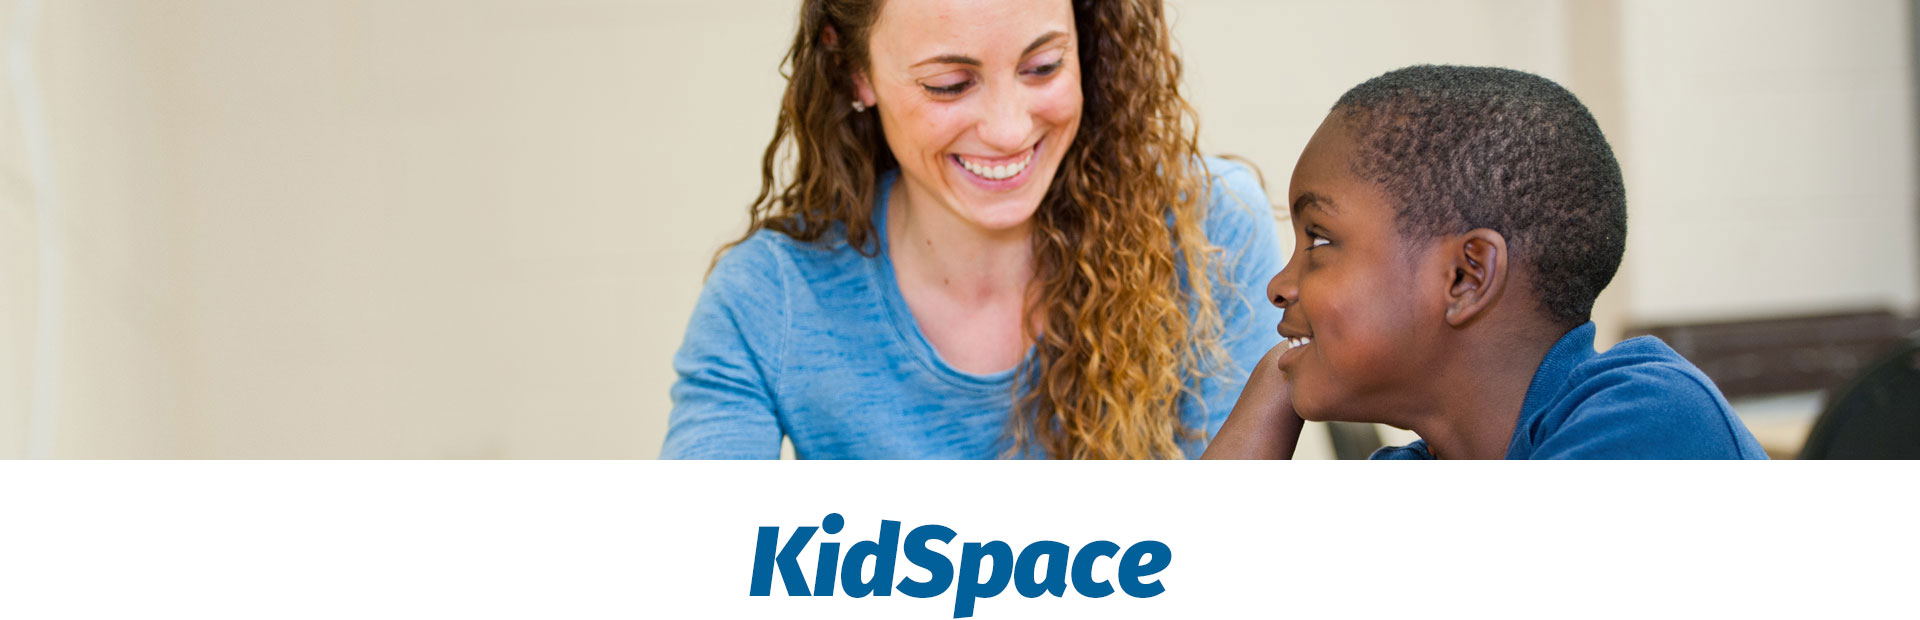 kleinlife kidspace, after school program, kidspace pa